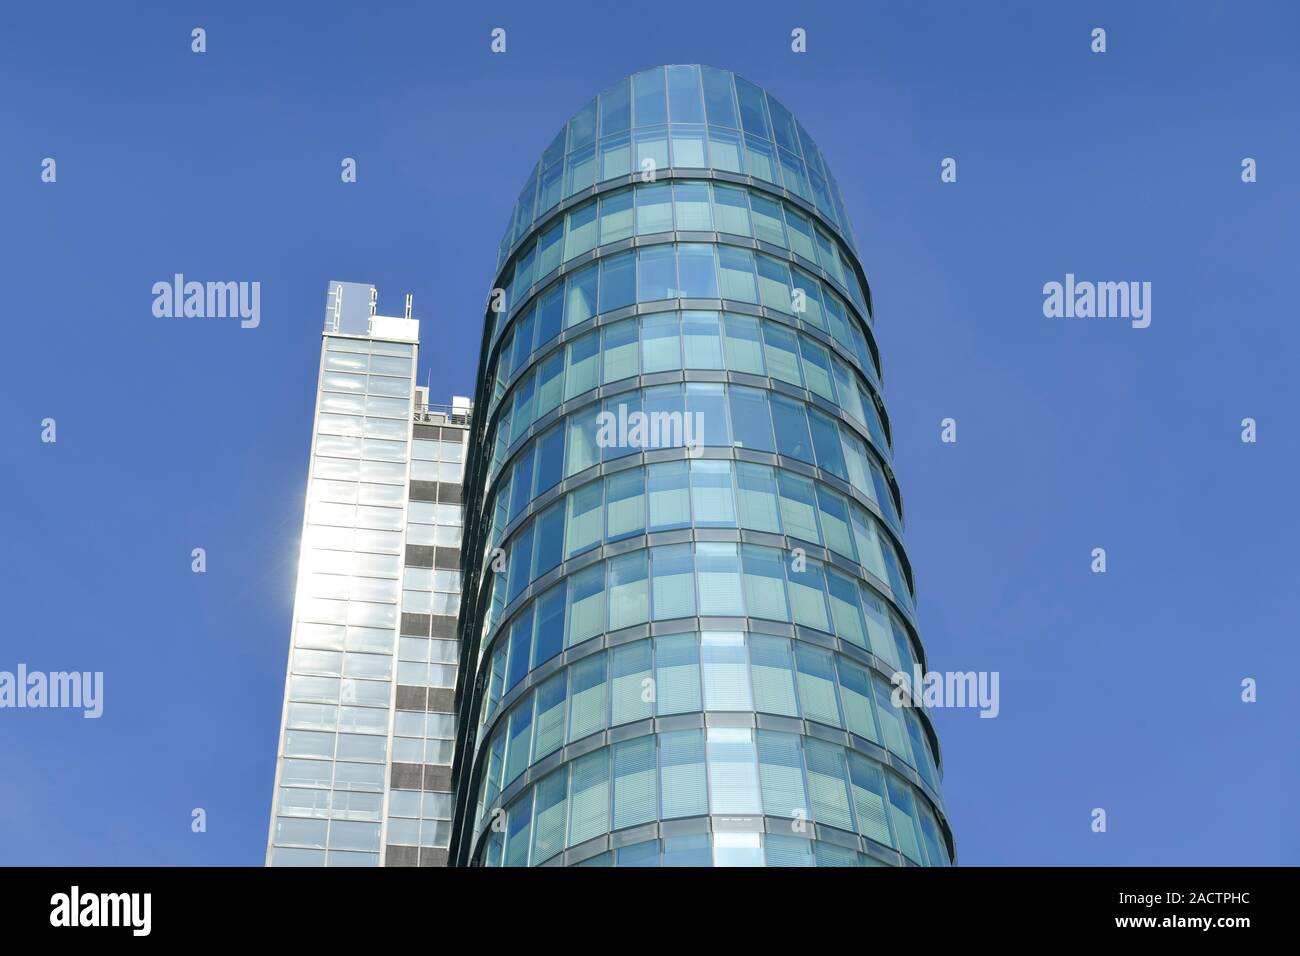 Inscrivez-vous ! Landmark Tower, Speditionsstraße, Düsseldorf, Nordrhein-Westfalen, Deutschland Banque D'Images